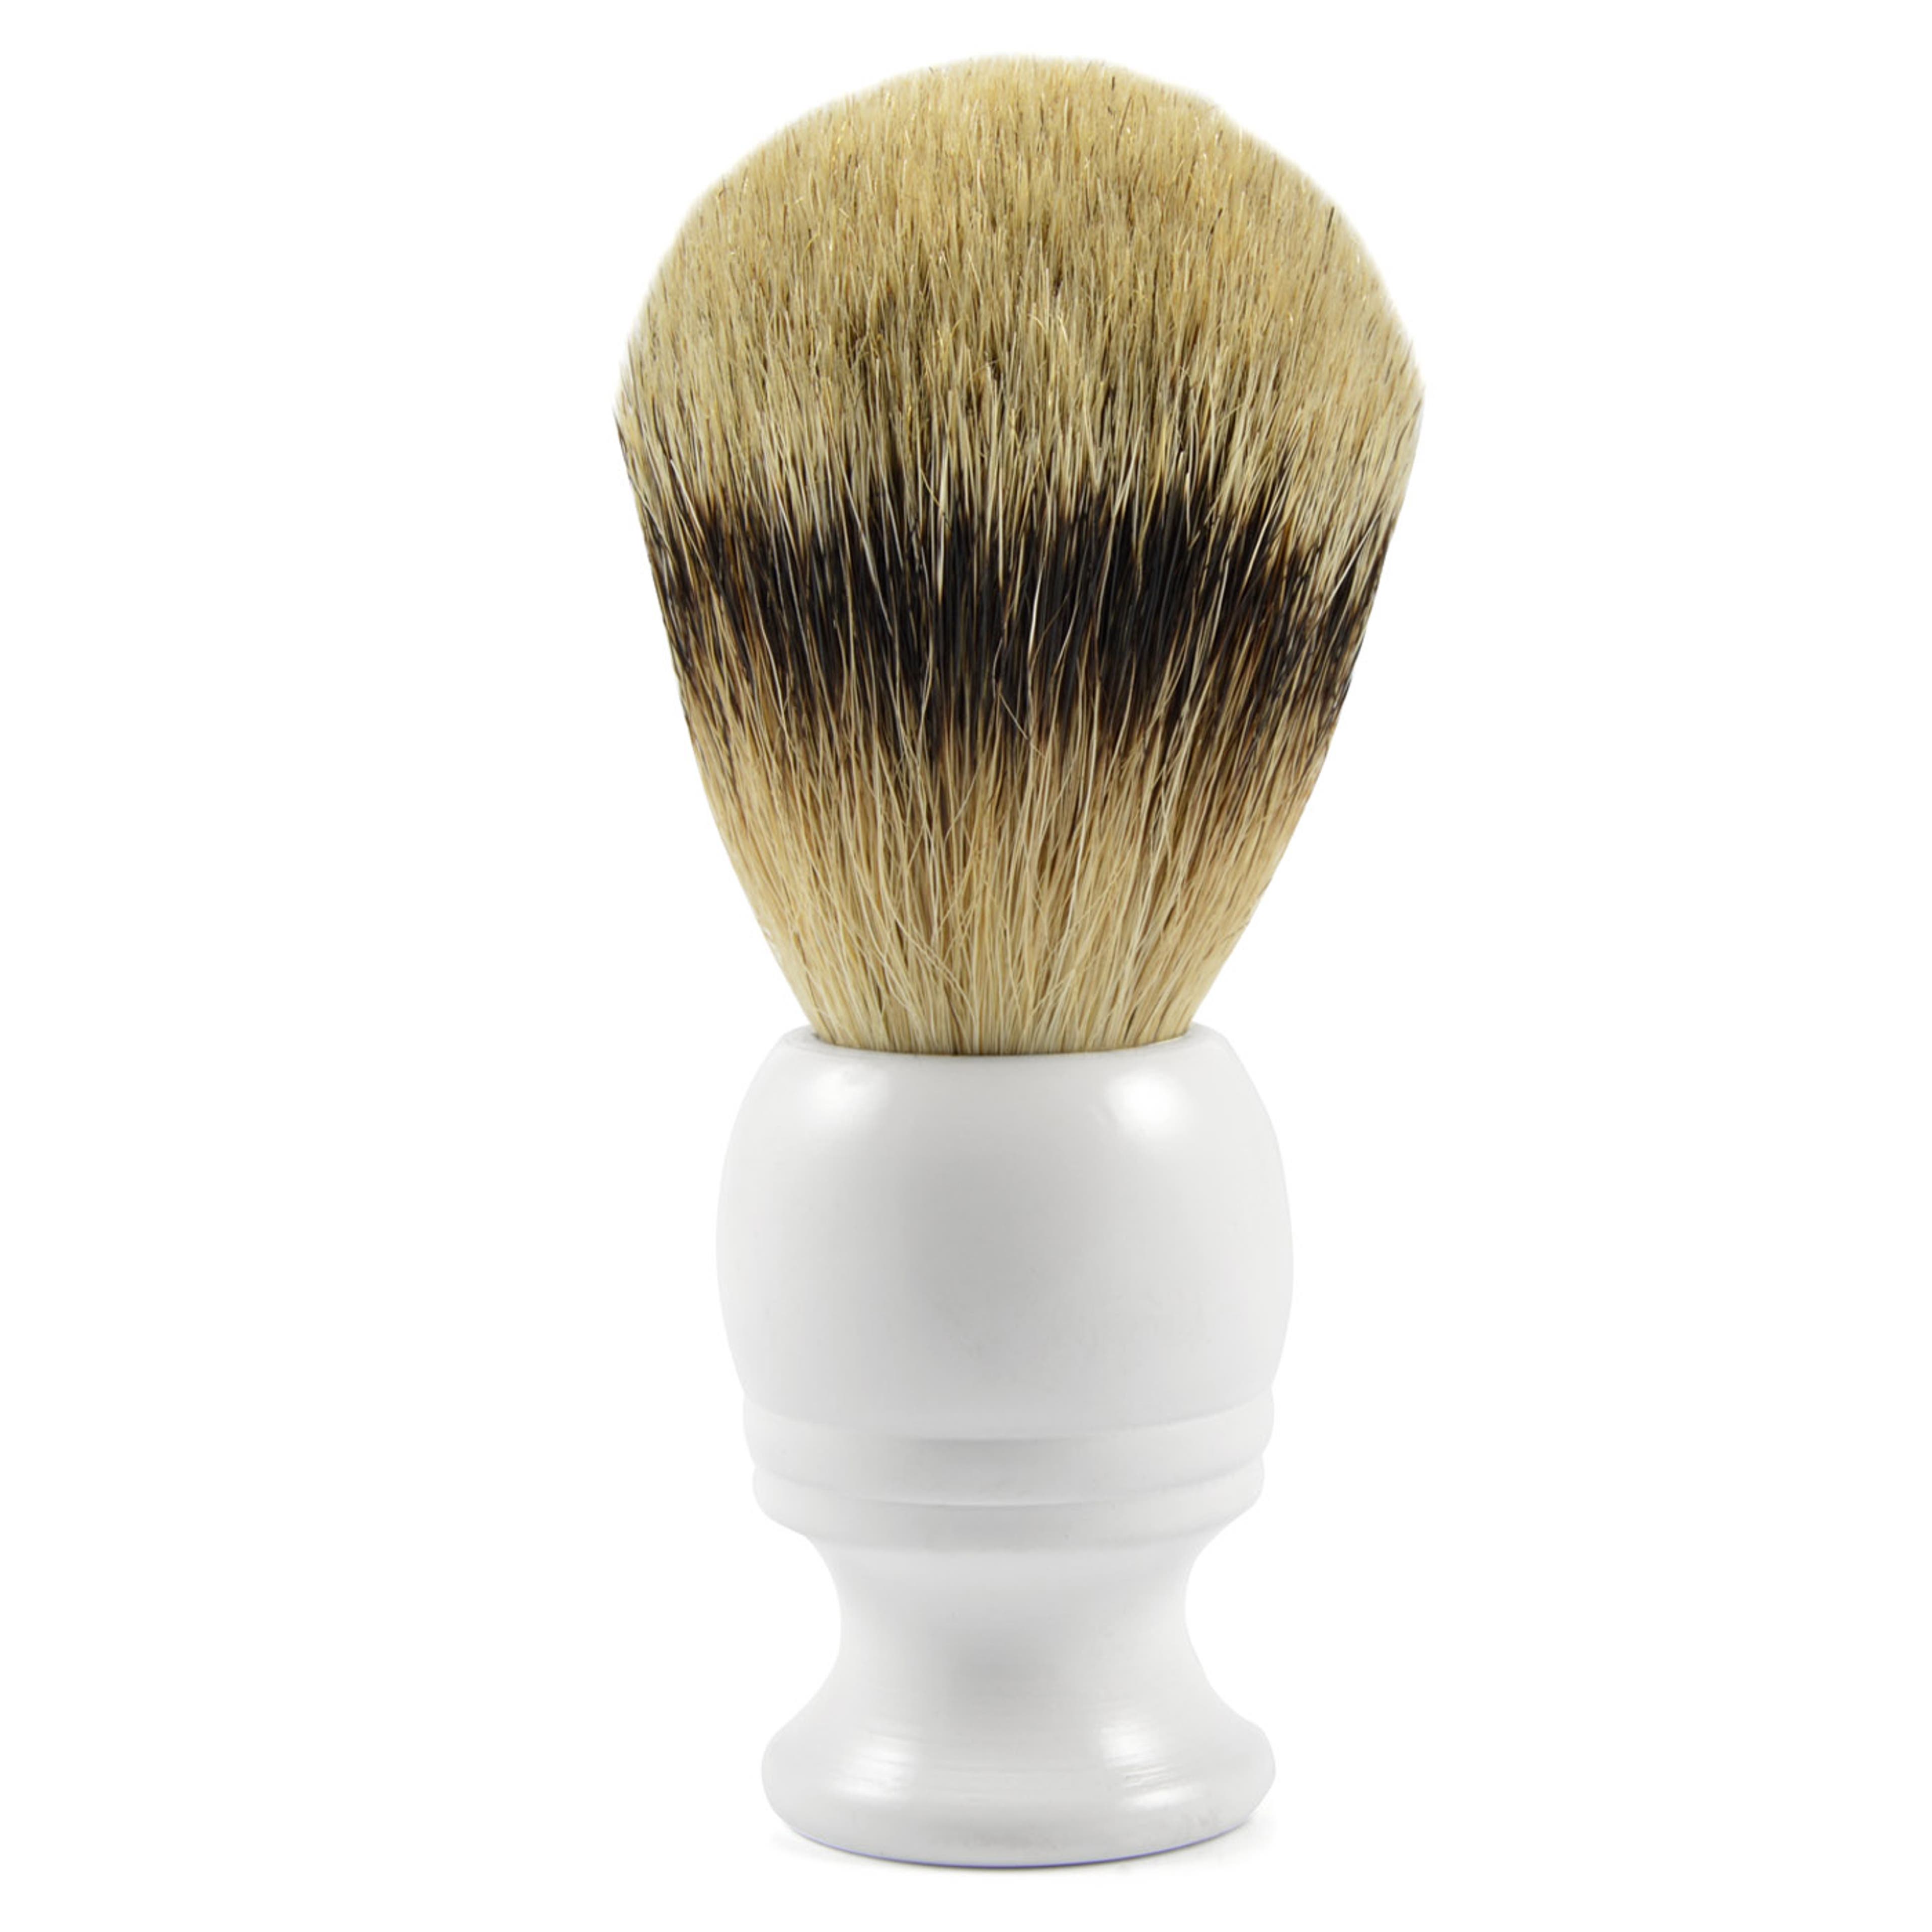 White Wood Best Badger Shaving Brush